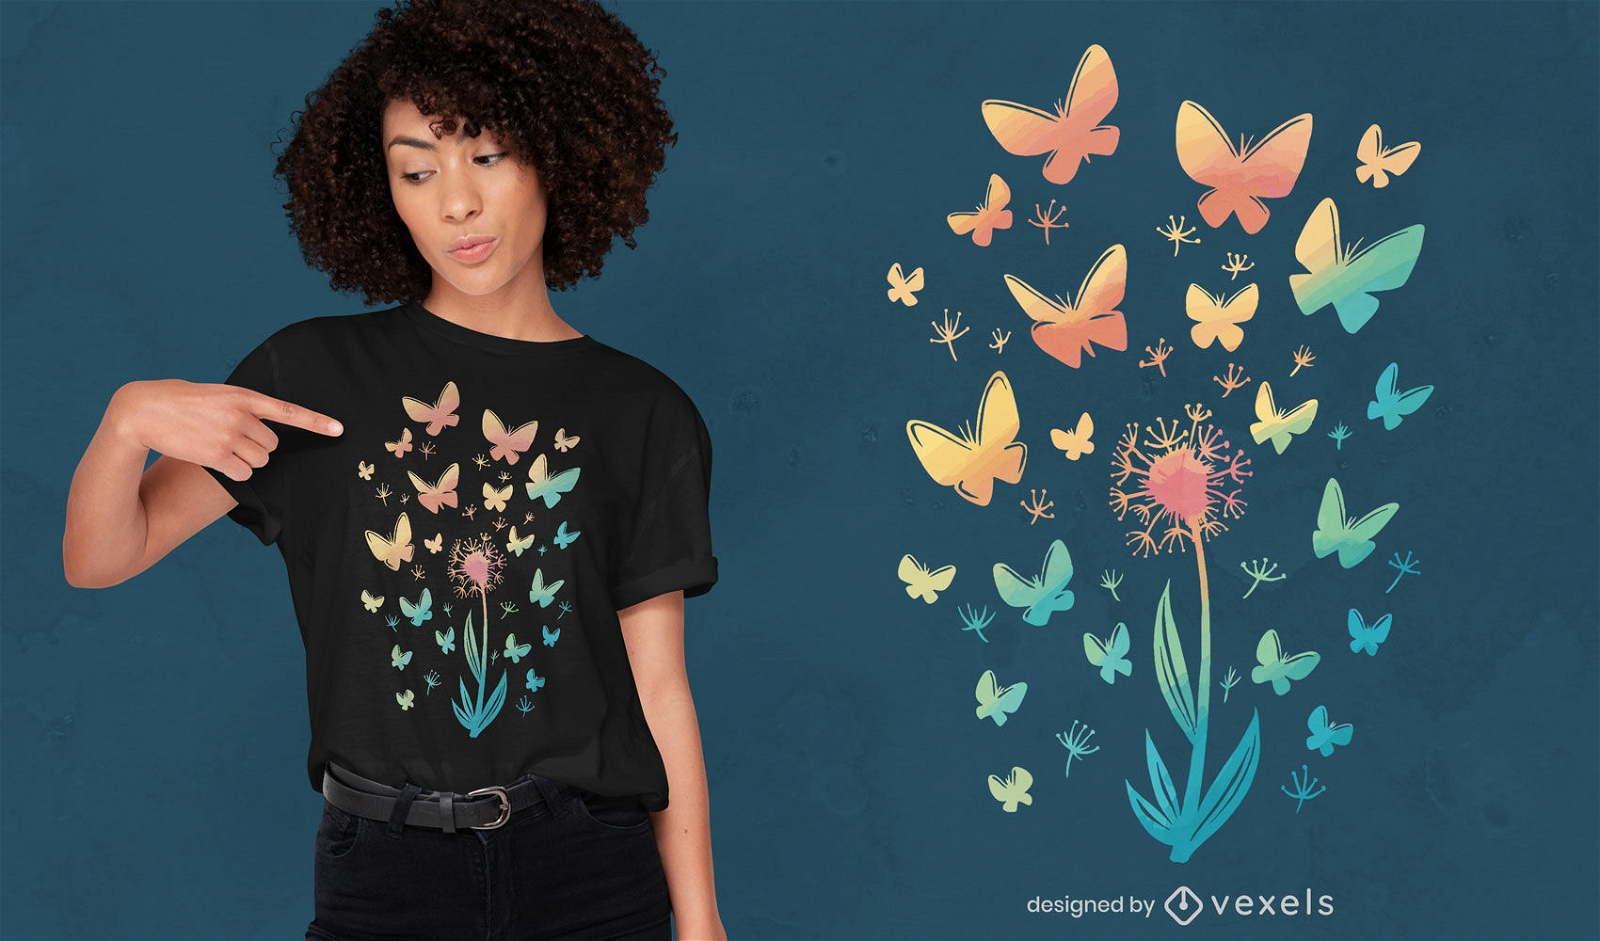 Dandelion flower and butterflies t-shirt design